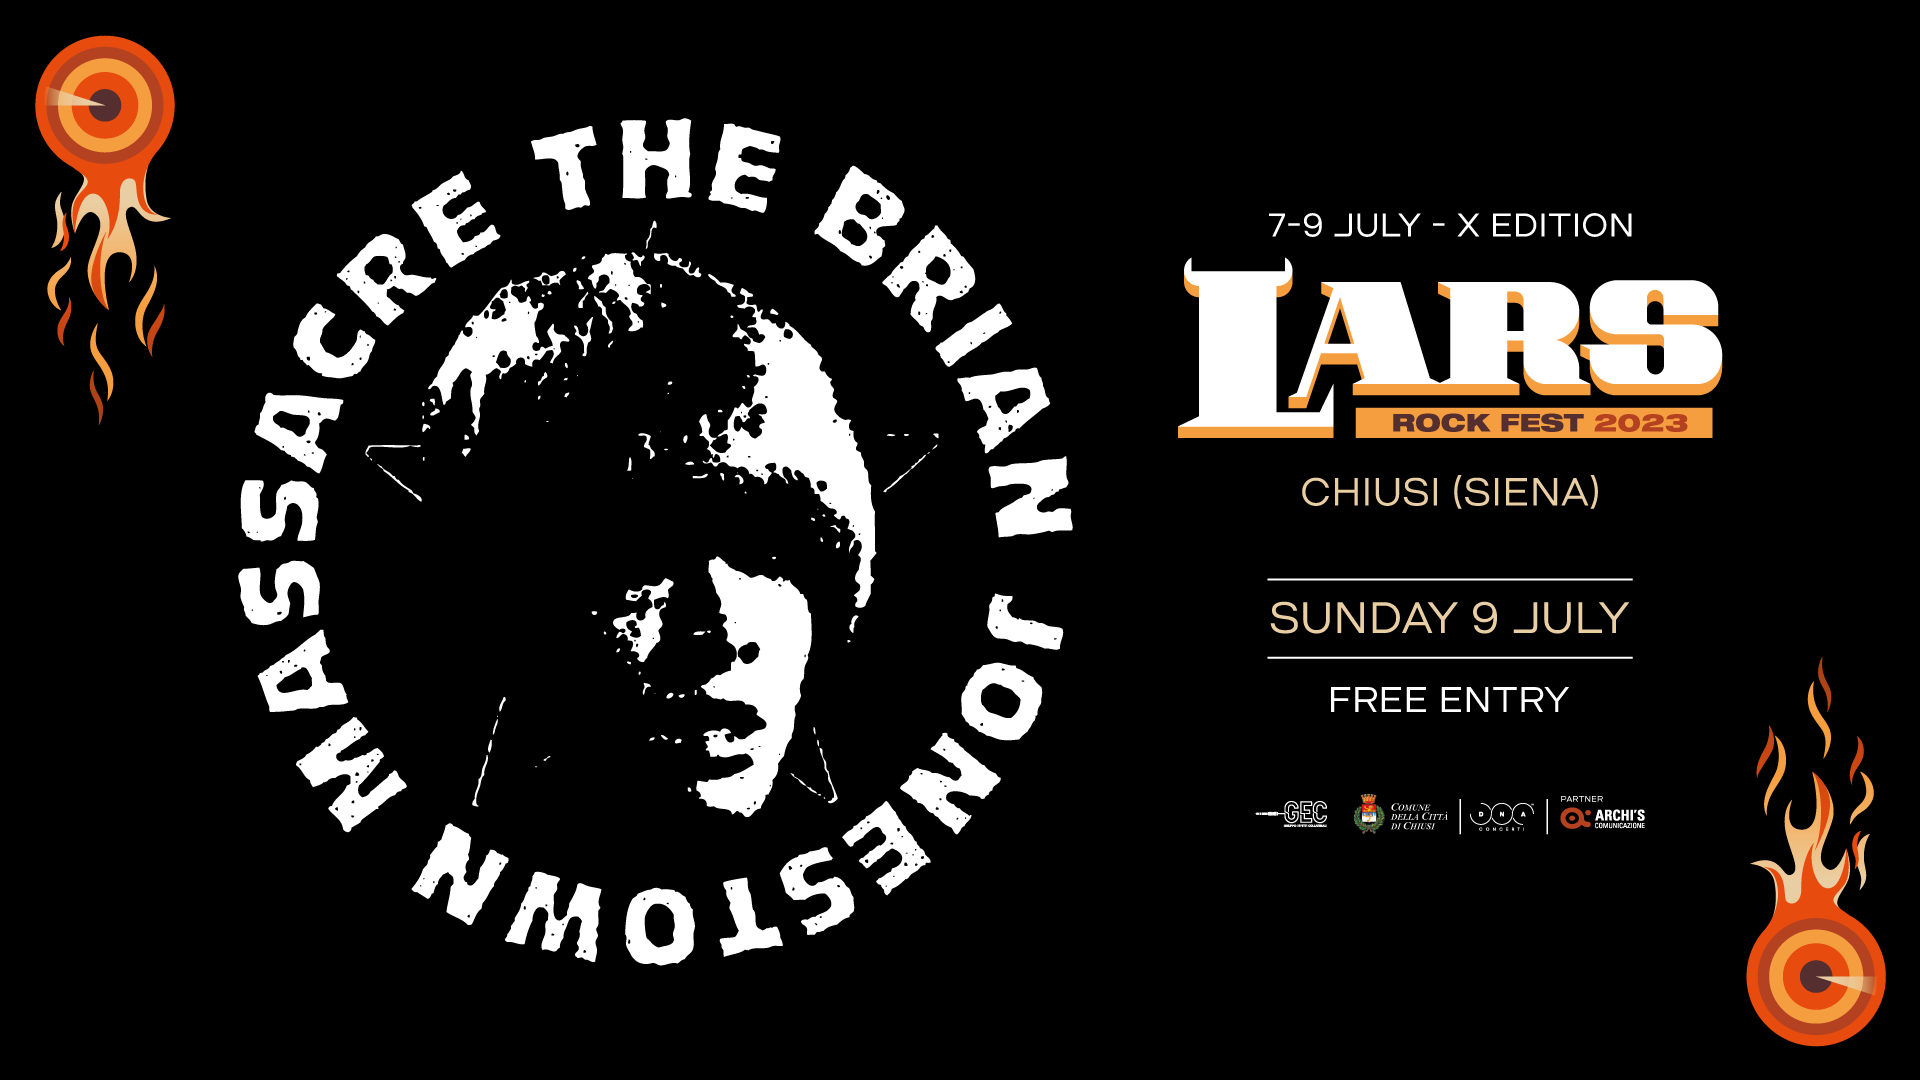 The Brian Jonestown Massacre sono il primo headliner annunciato dal LARS ROCK FEST 2023   A Chiusi dal 7 al 9 luglio